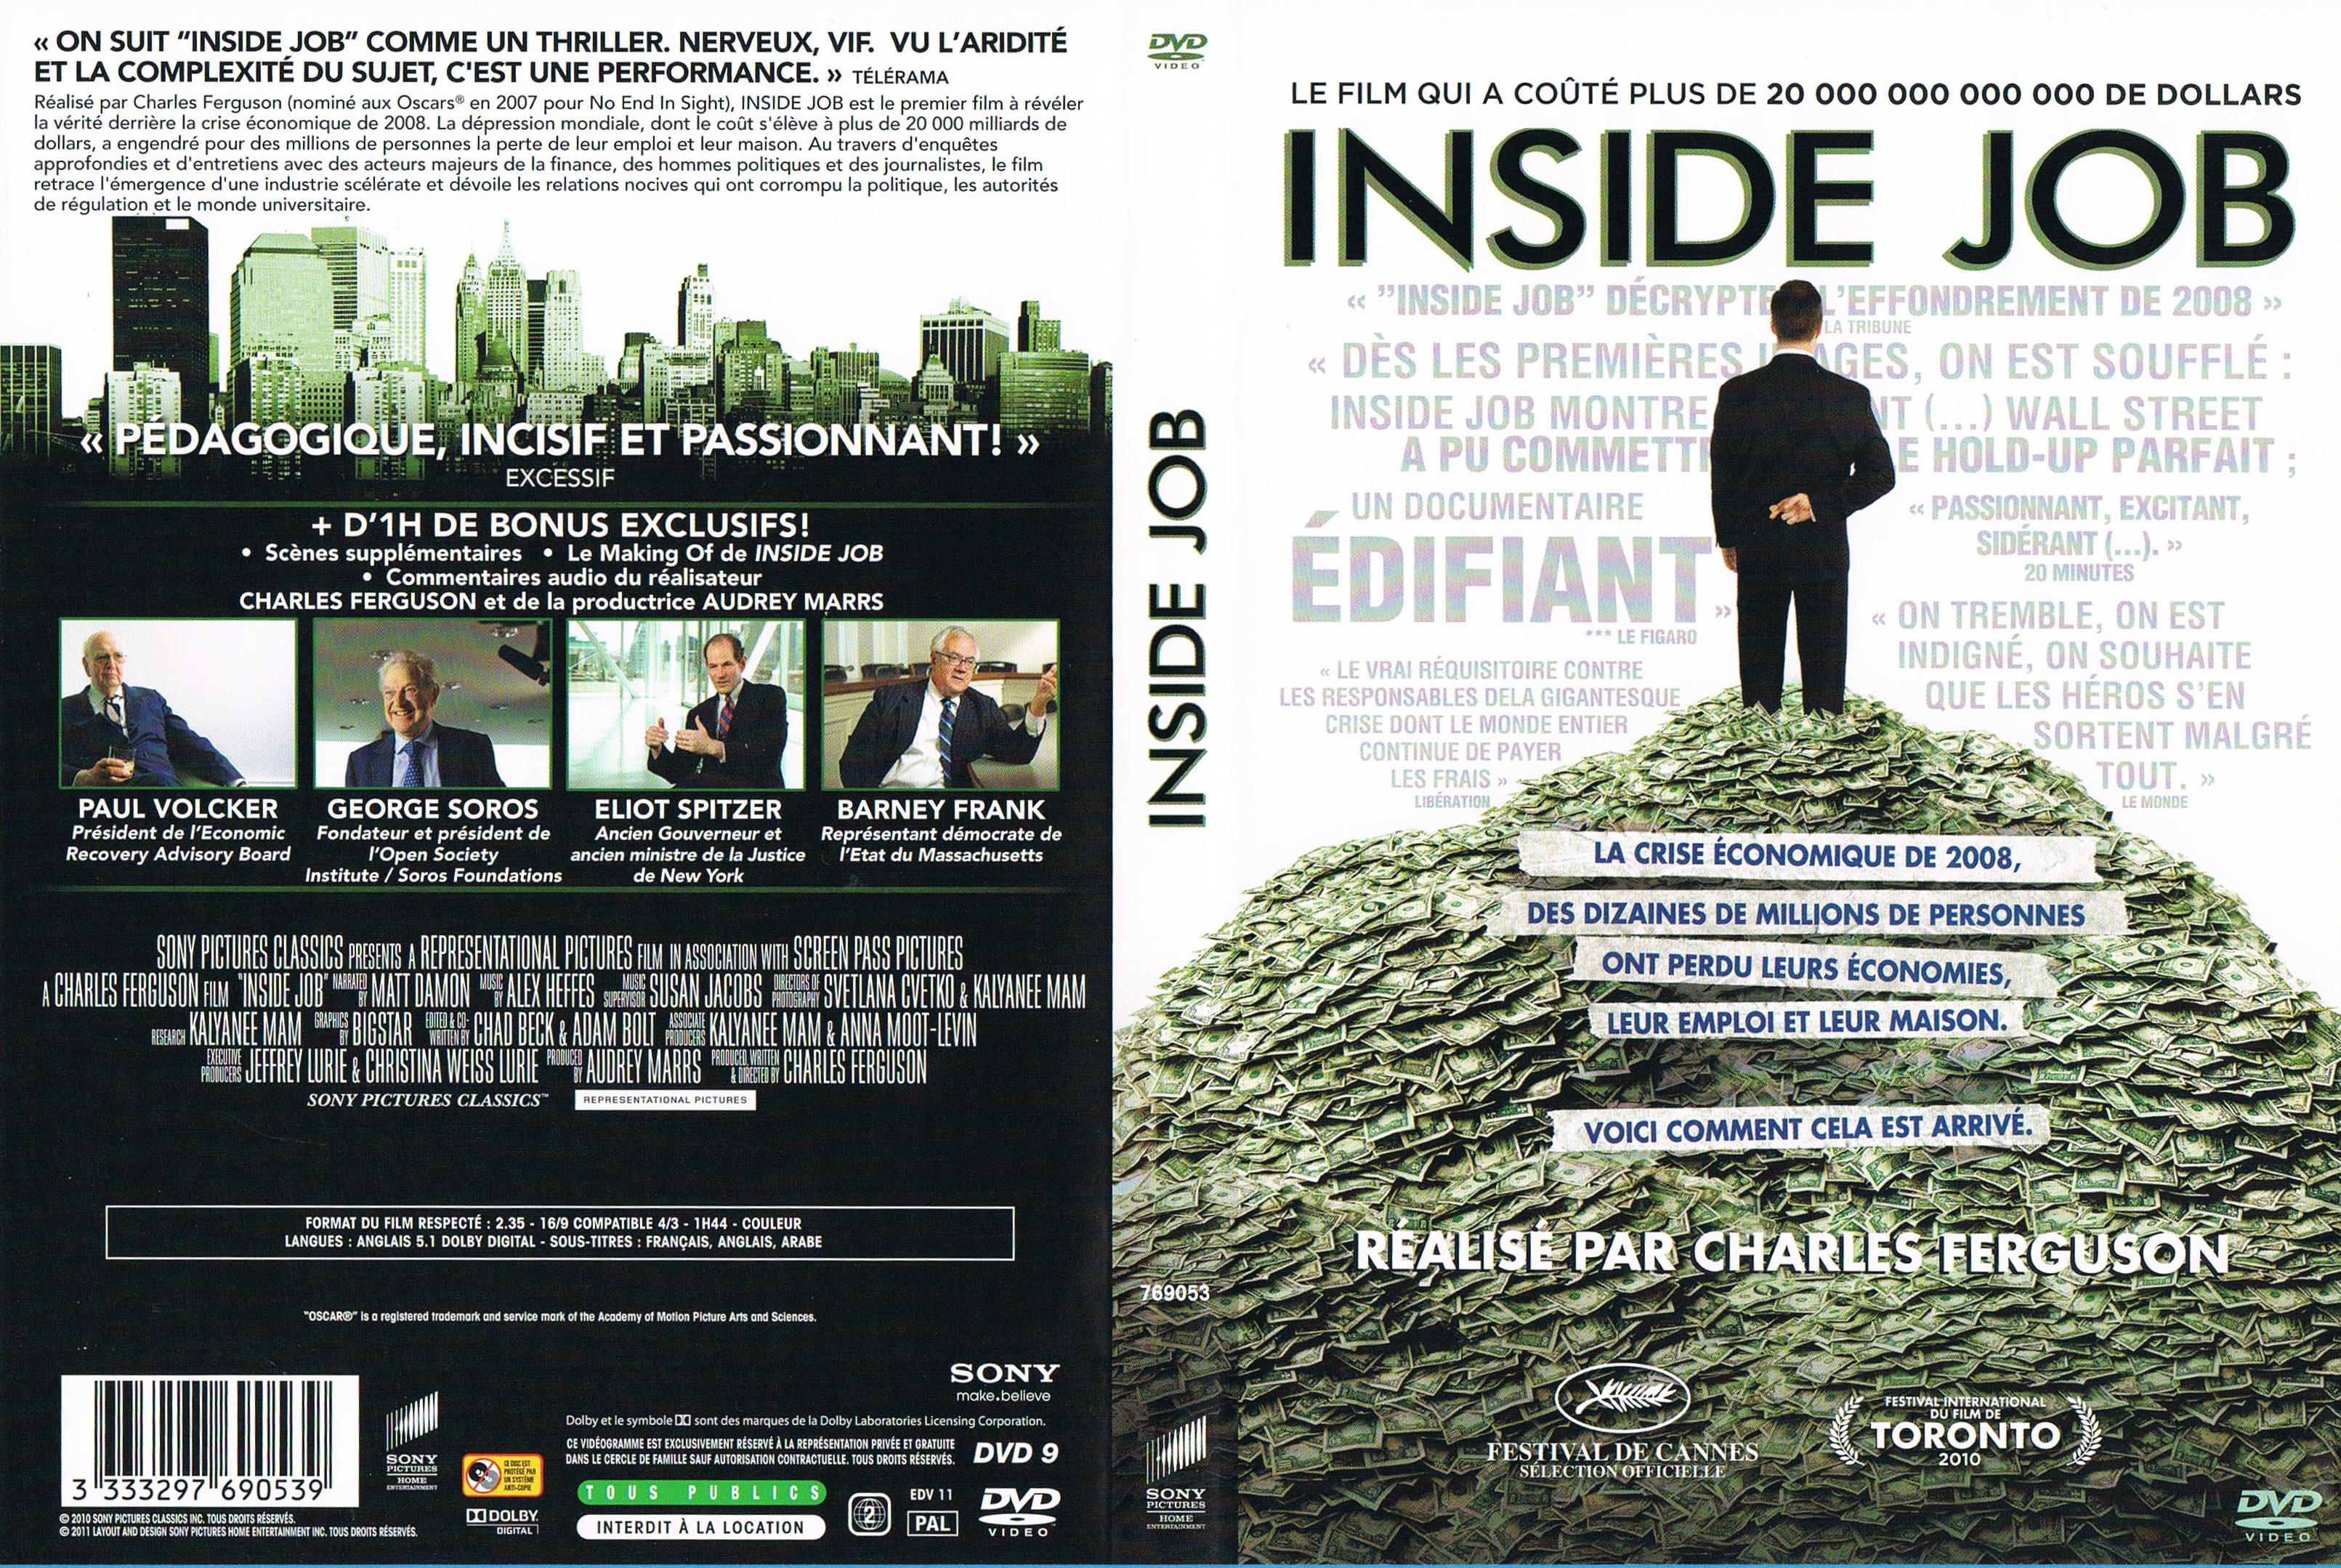 Jaquette DVD de Inside job (Doc) - Cinéma Passion